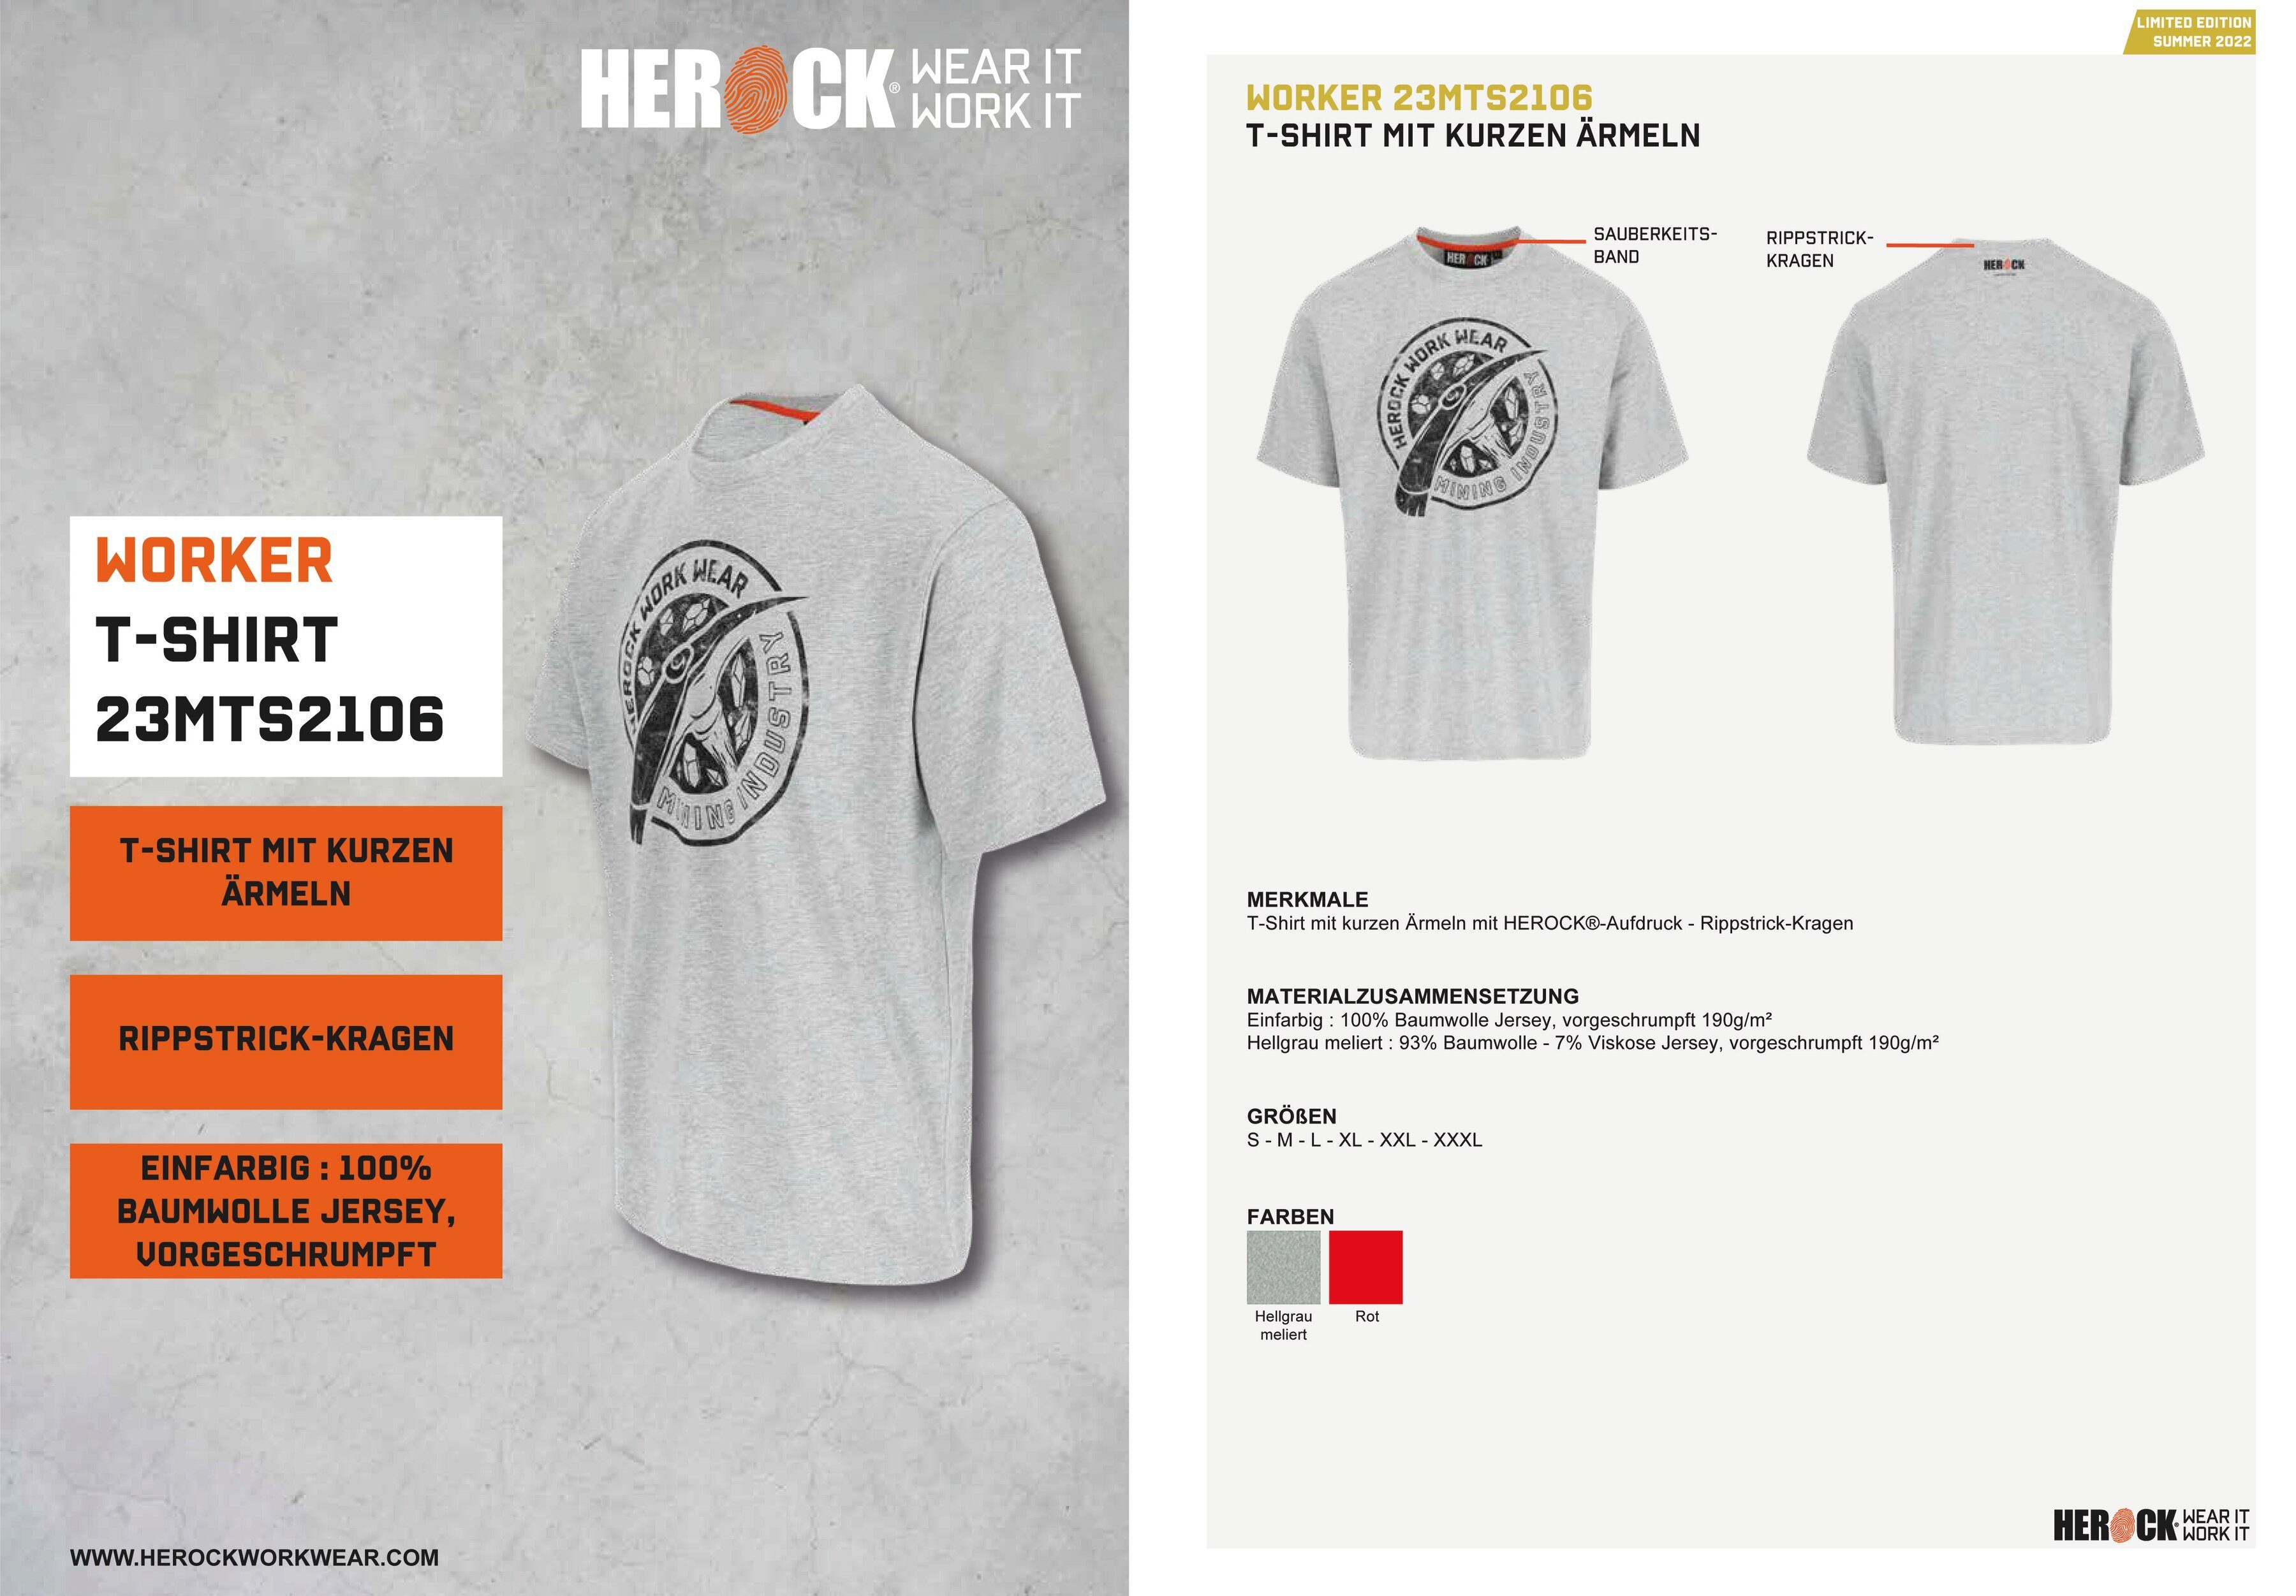 in hellgrau erhältlich Herock Limited Farben Worker Edition, T-Shirt verschiedene